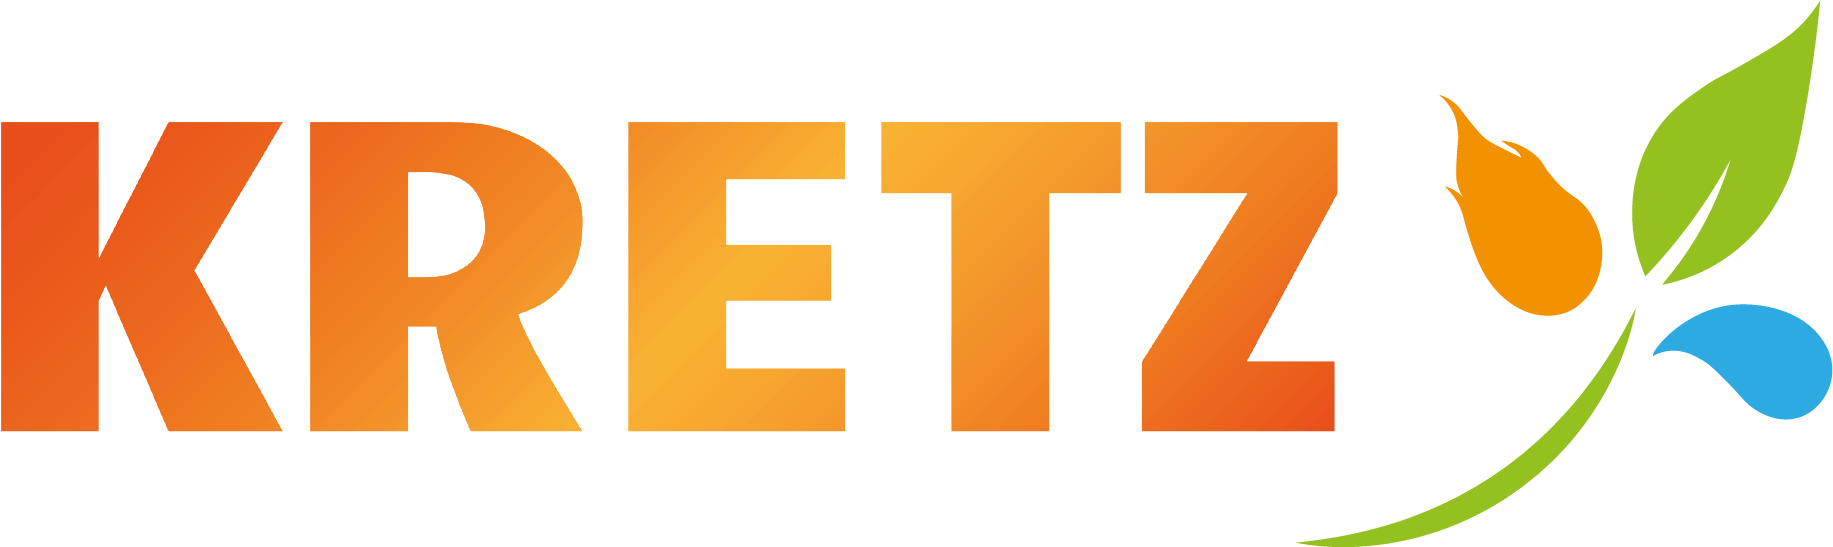 Logo Kretz chauffage climatisation